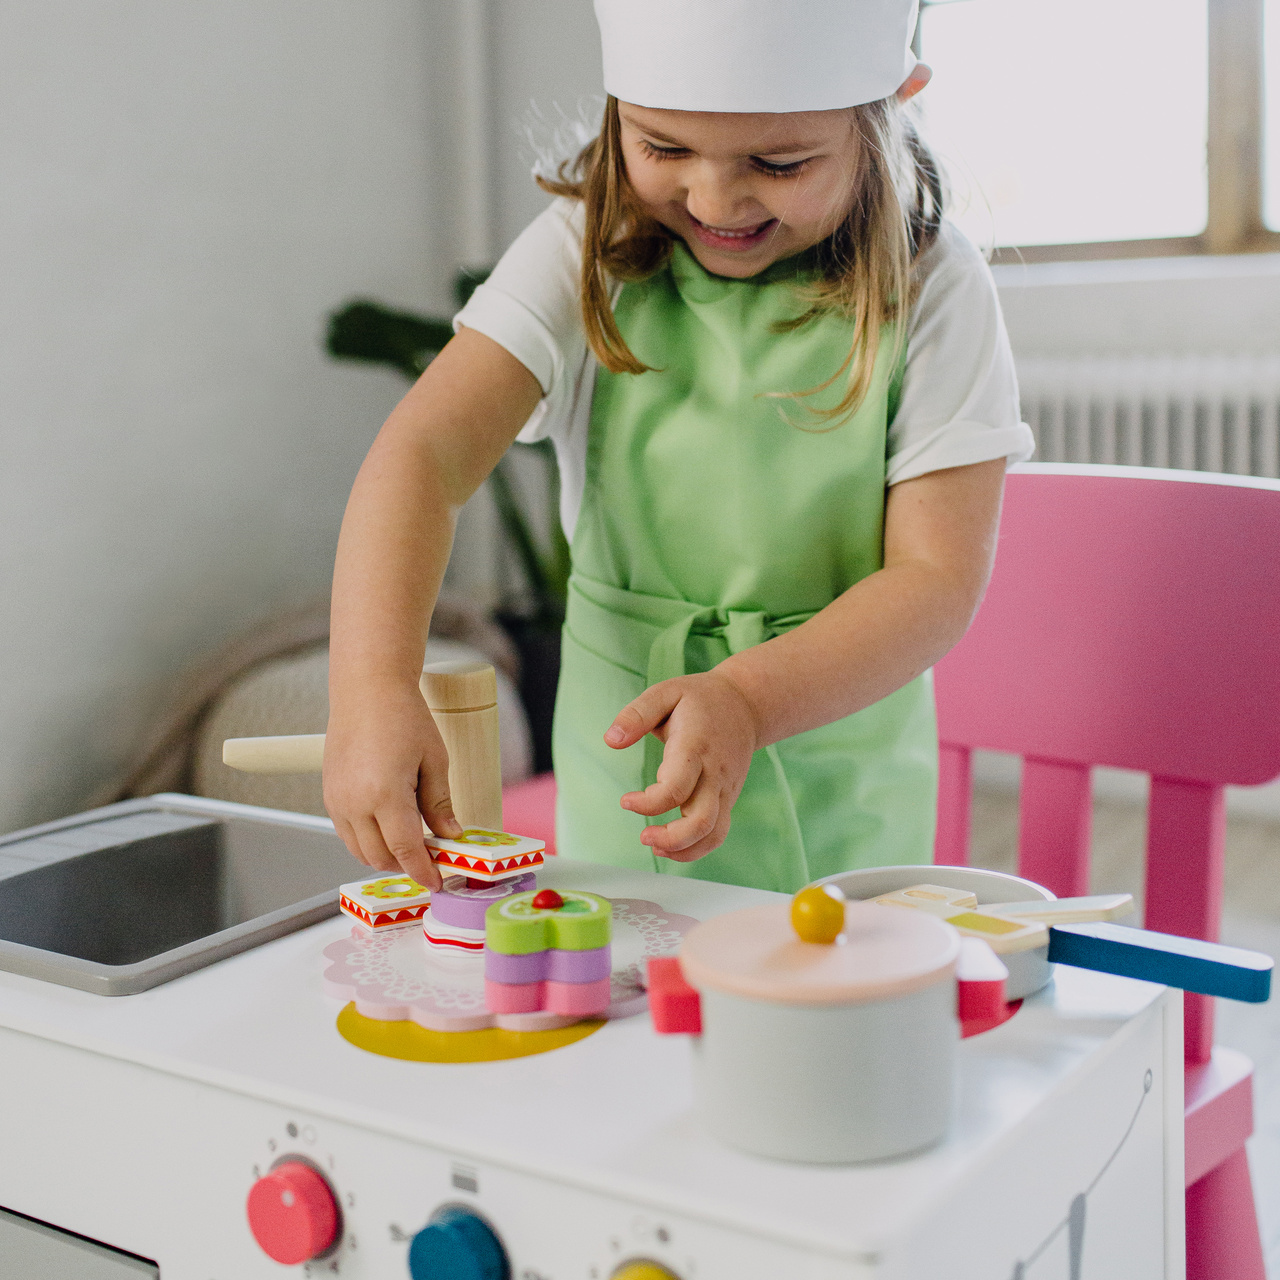 Spielzeugküche & Küchenspiel micki kuchenform mit spielzeugbackwerk